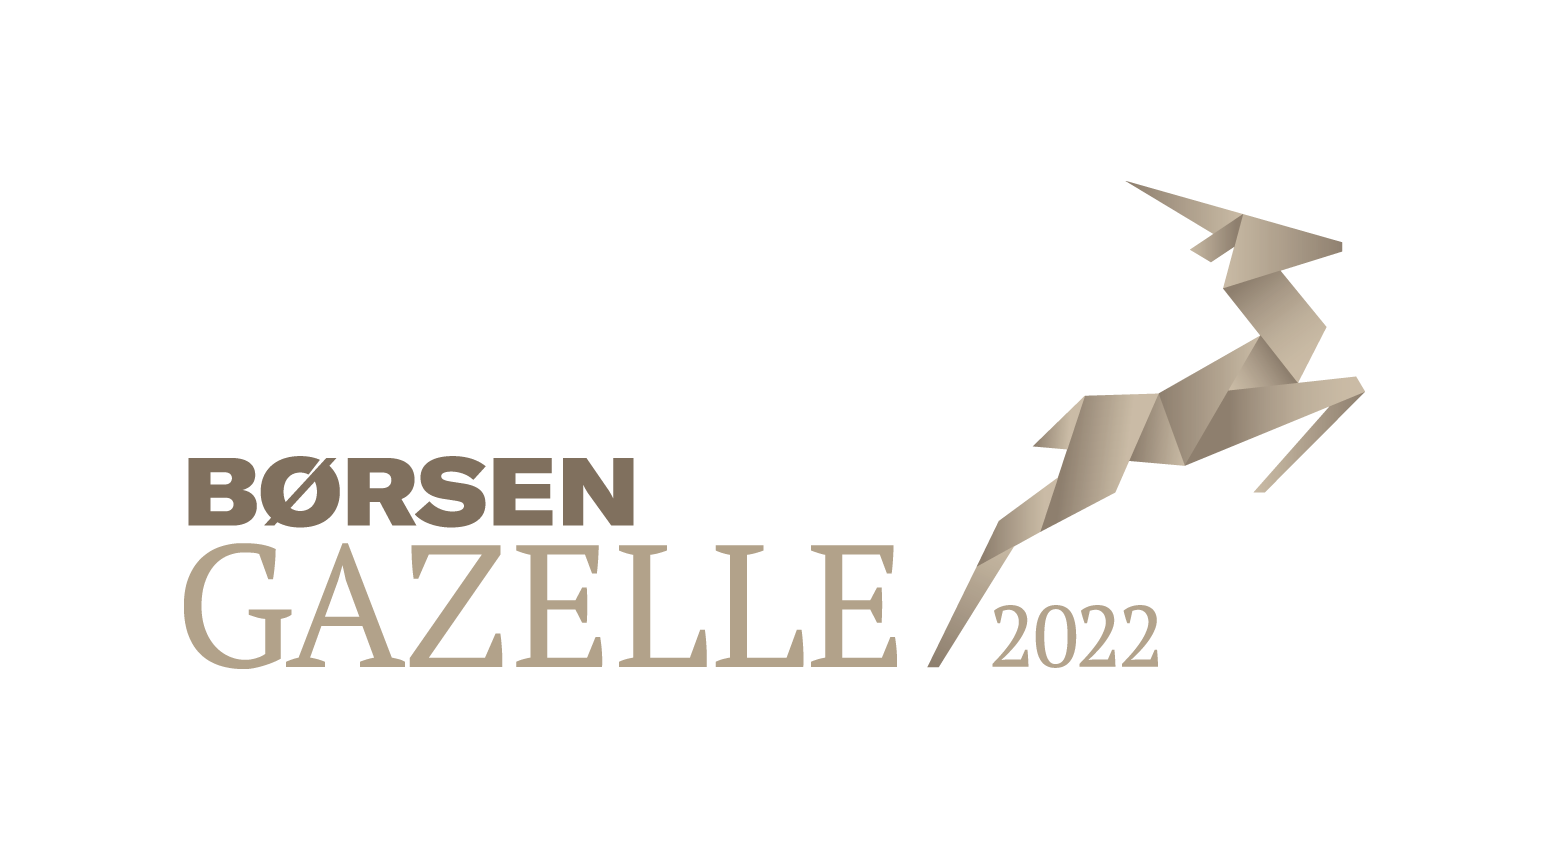 Gazelle logo